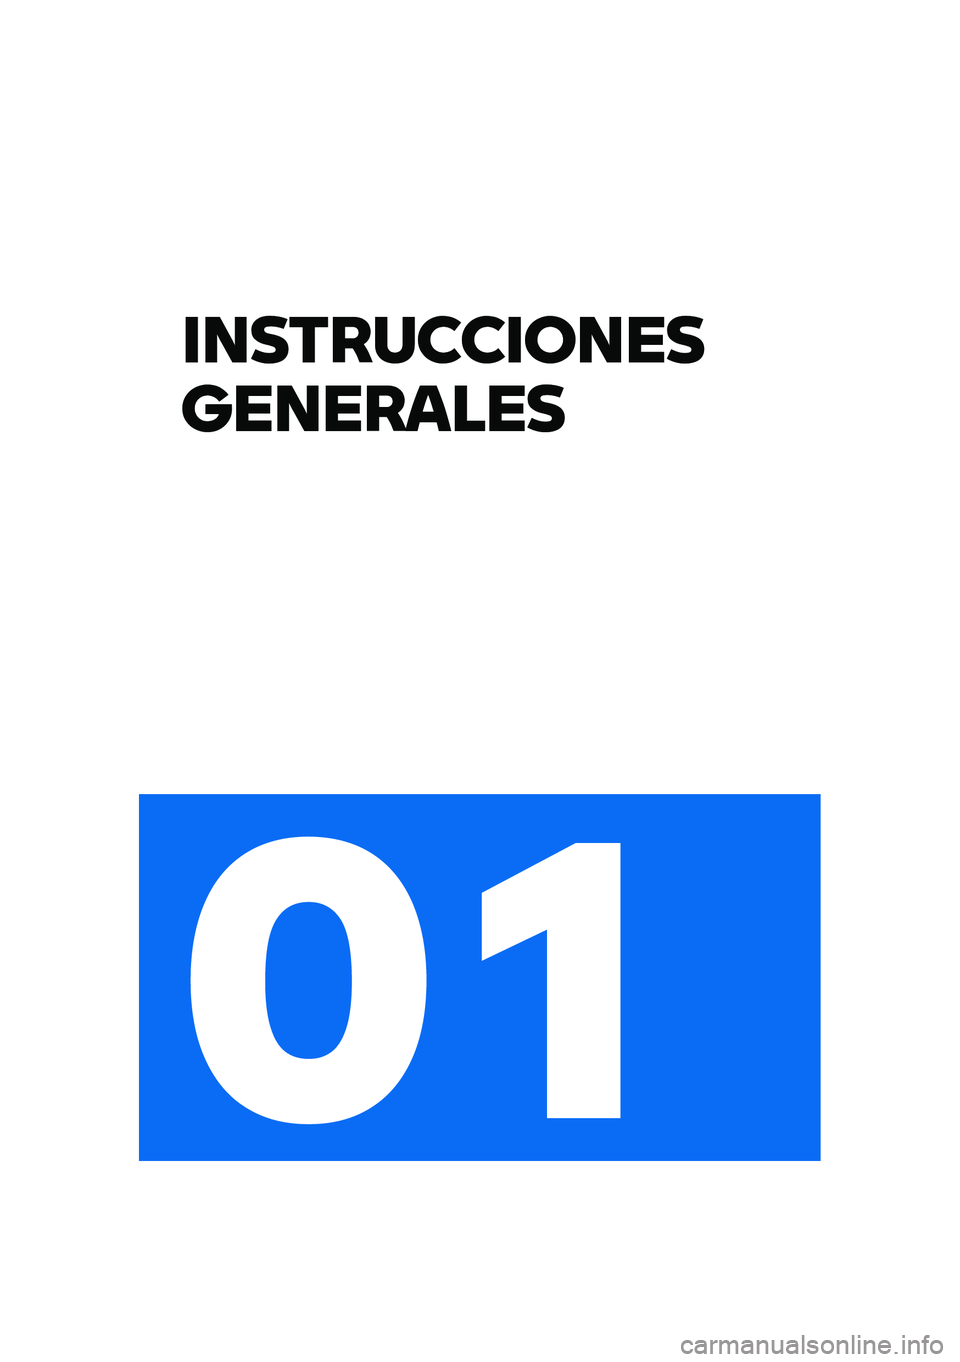 BMW MOTORRAD CE 04 2021  Manual de instrucciones (in Spanish) �\f�
�������\f��
��
���
������
�\b�
 